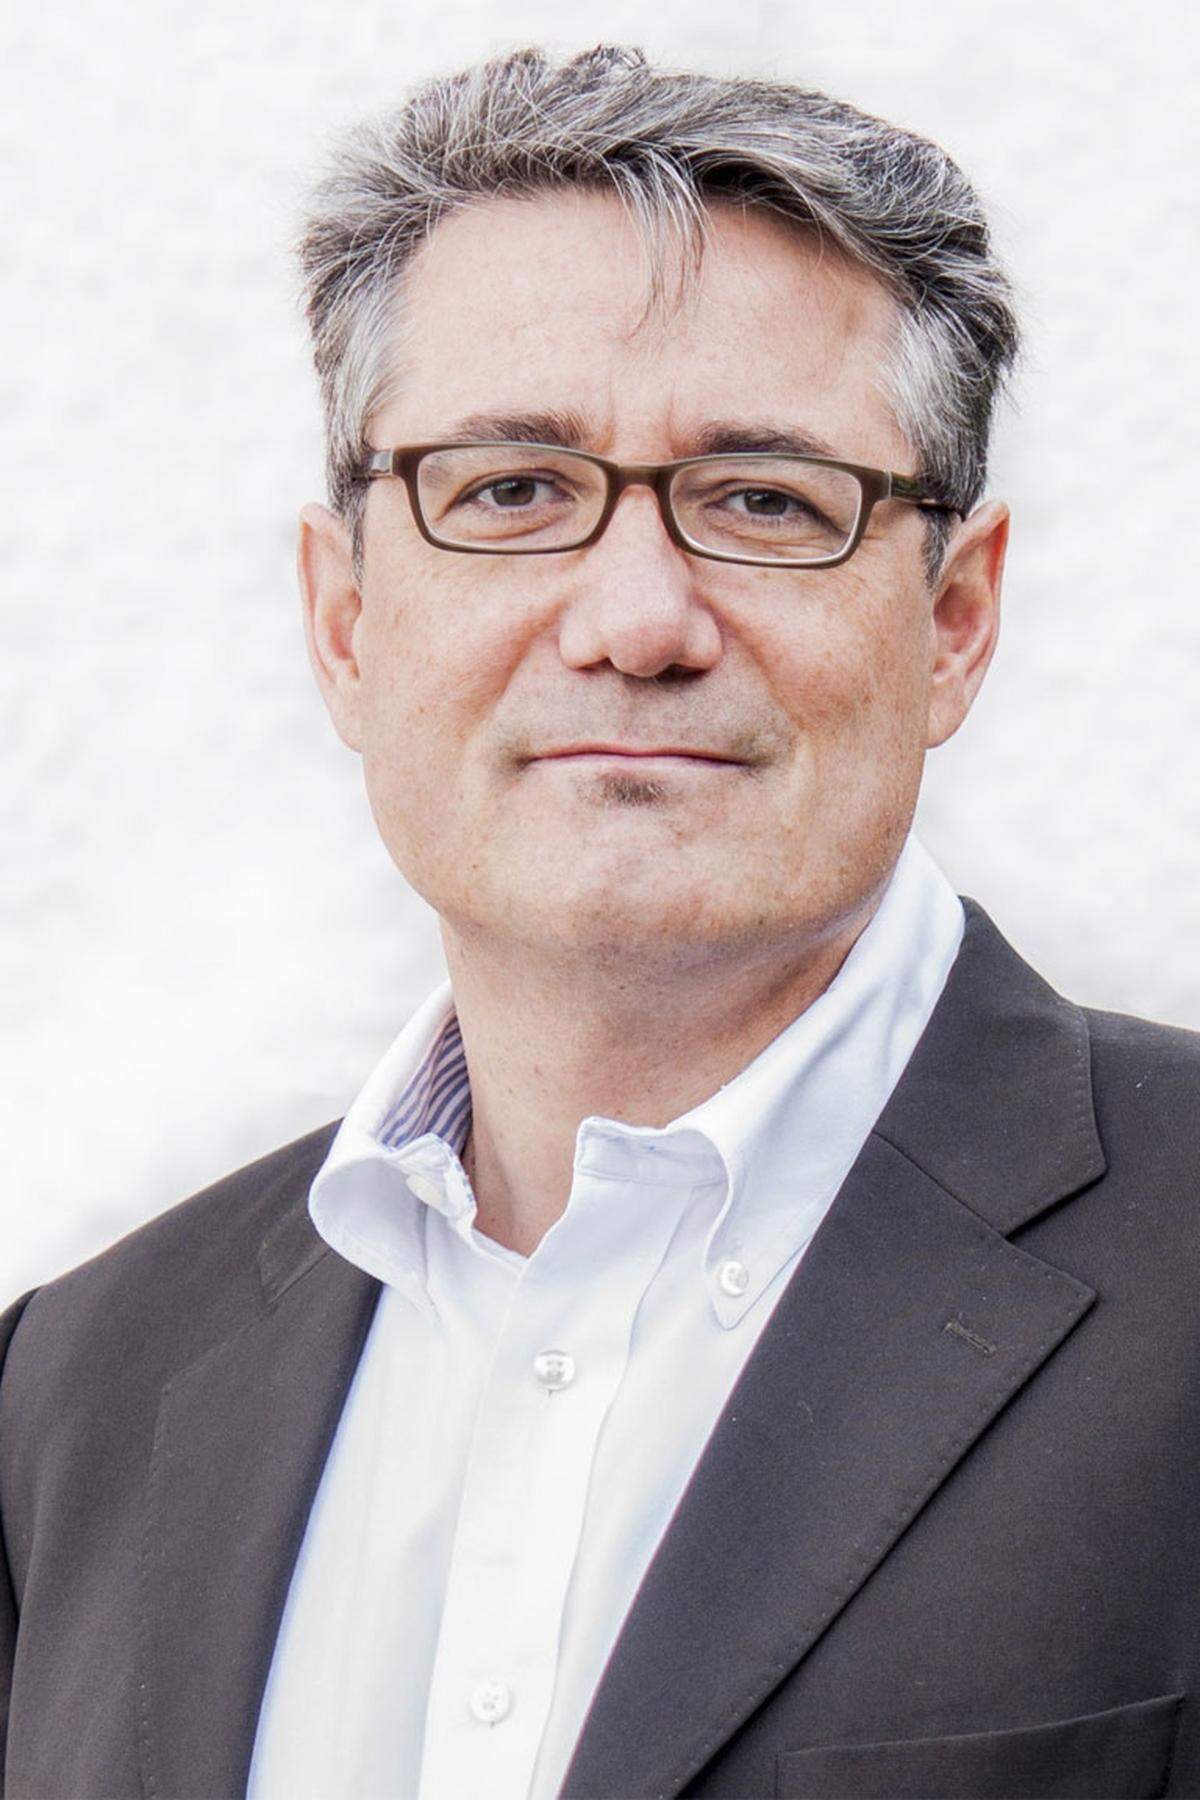 Mit Anfang Juni startete Wolfgang Briem (46) in seiner neuen Funktion als Vice President der Business Unit Partner Retail bei Schneider Electric Austria. Der Vertriebs- und Marketingspezialist war zuletzt bei Microsoft und davor bei IBM tätig und verfügt über nationale sowie internationale Erfahrungen aus unterschiedlichen Management-Positionen großer Konzerne.